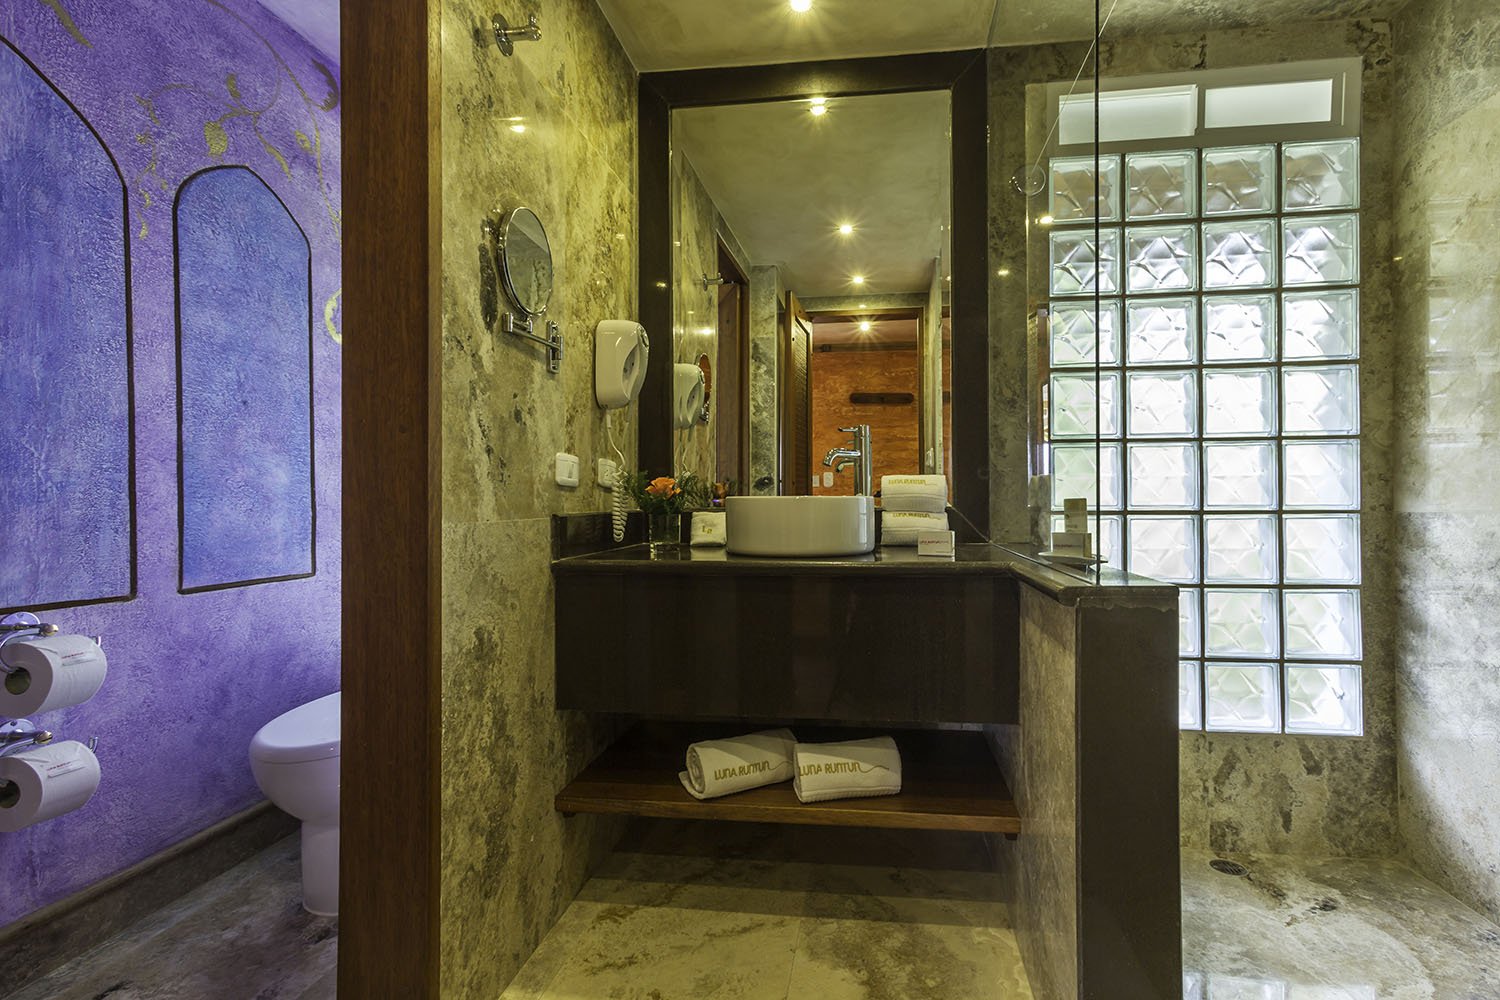 Bathroom Romantic Room Cancion de Amor 36 - Luna Volcan - Hotel en Banos Ecuador.jpg